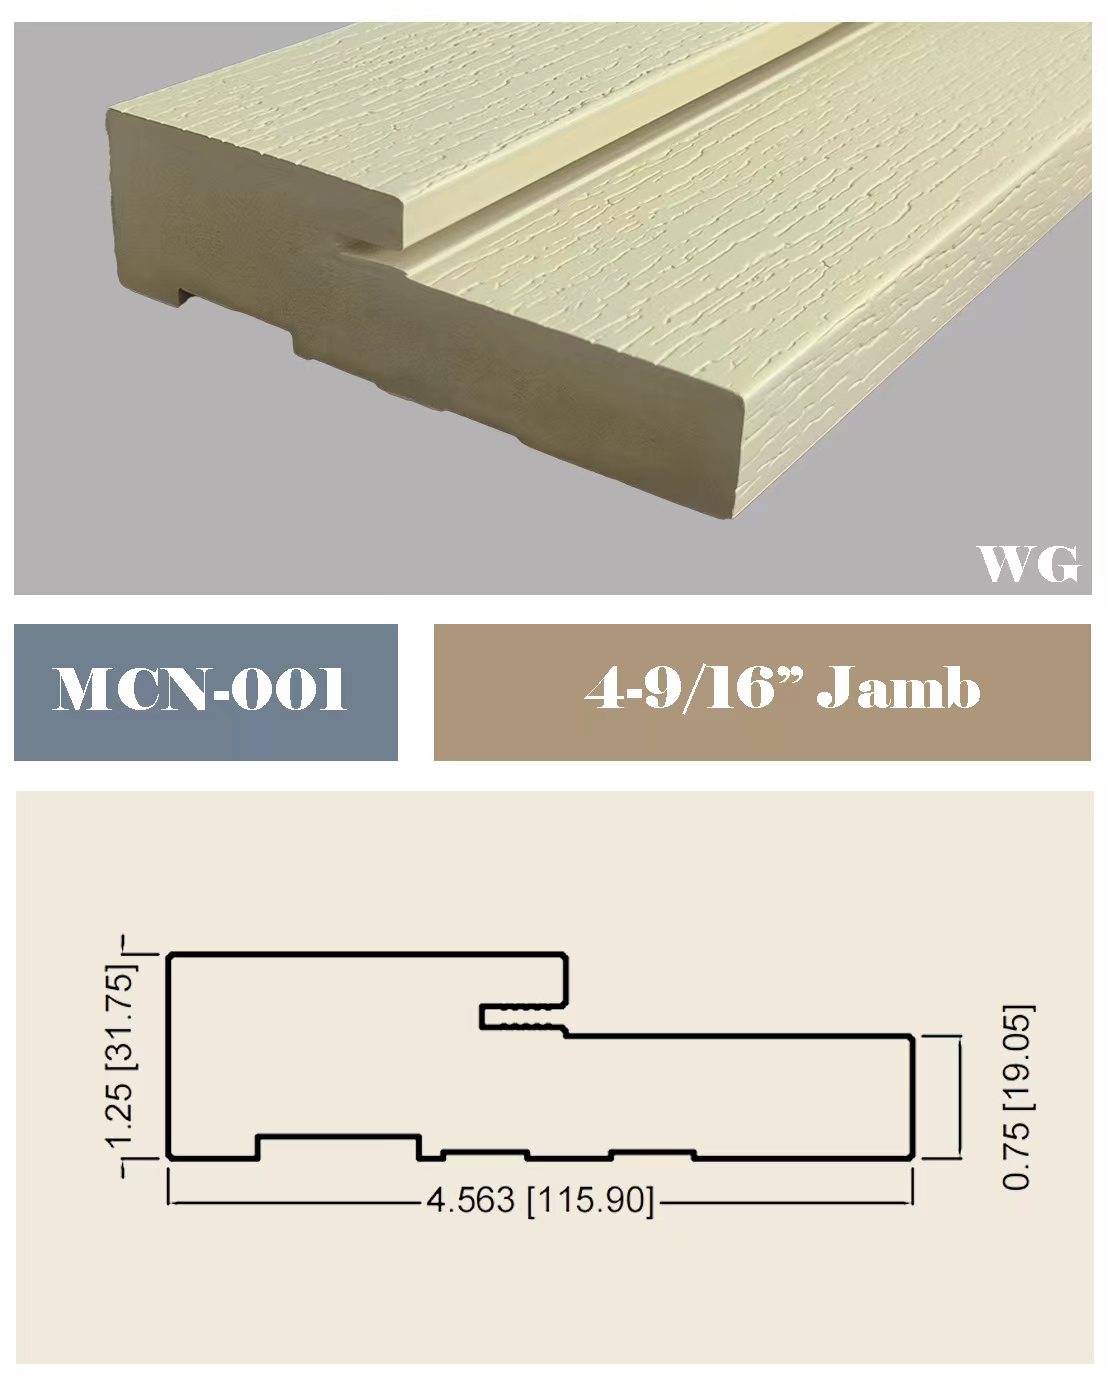 قاب های درب WPC PVC Woodgrain برای درب FRP در چین تولید می کند